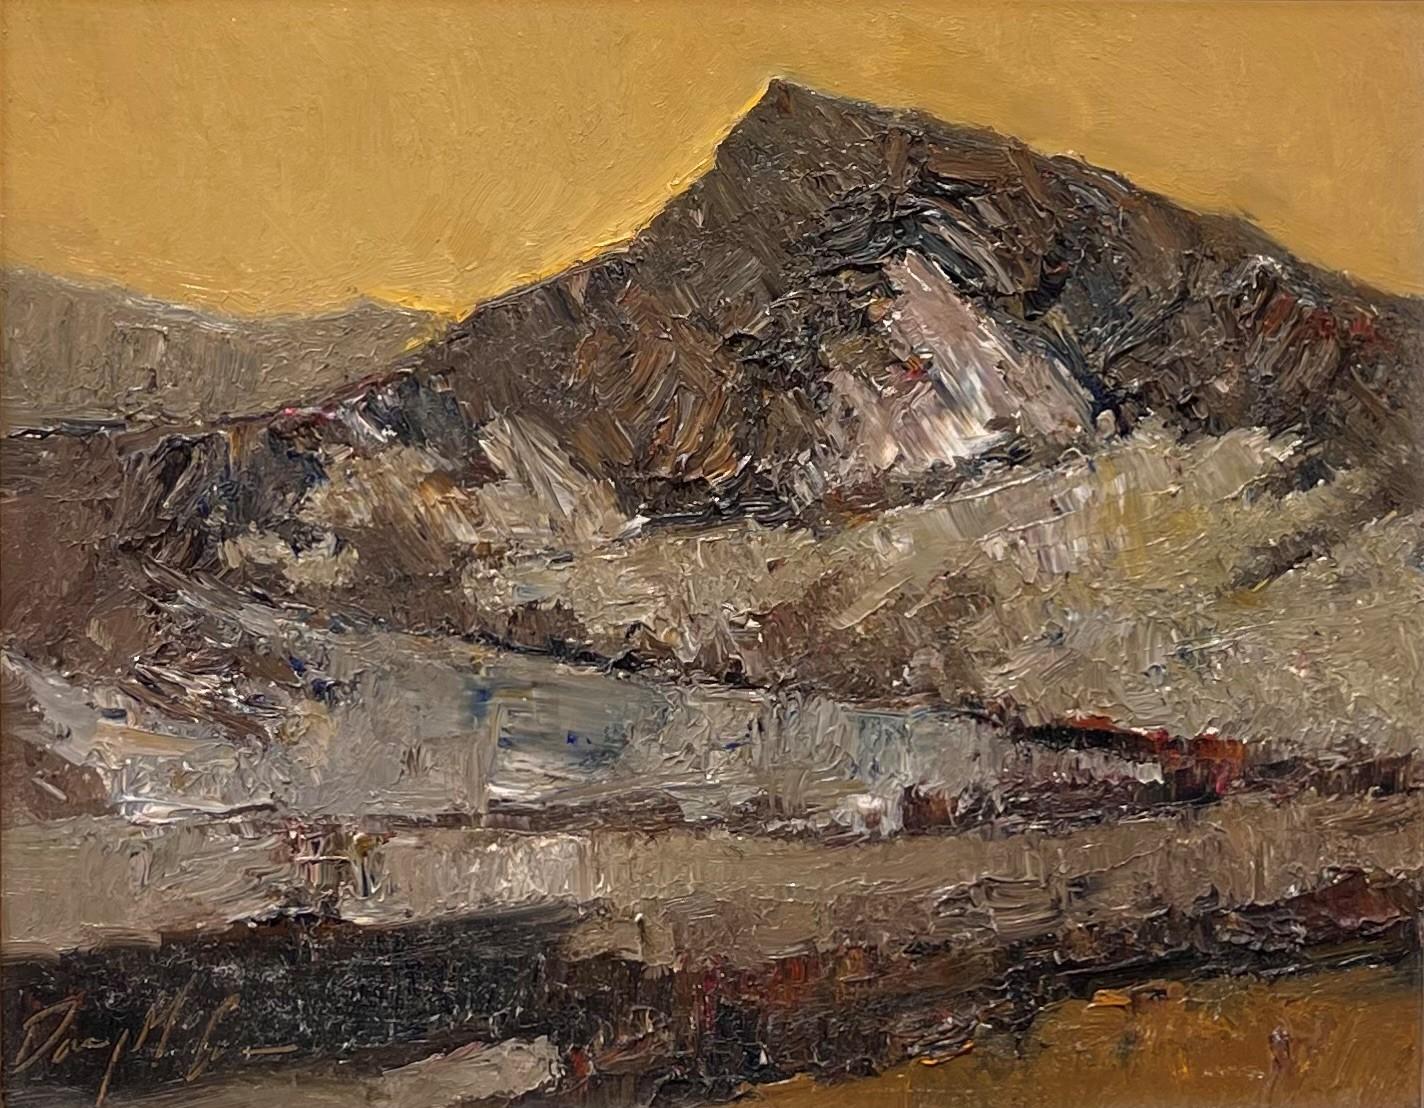 Danny McCaw Landscape Painting - "Golden Hour" Mountain Landscape Oil Painting